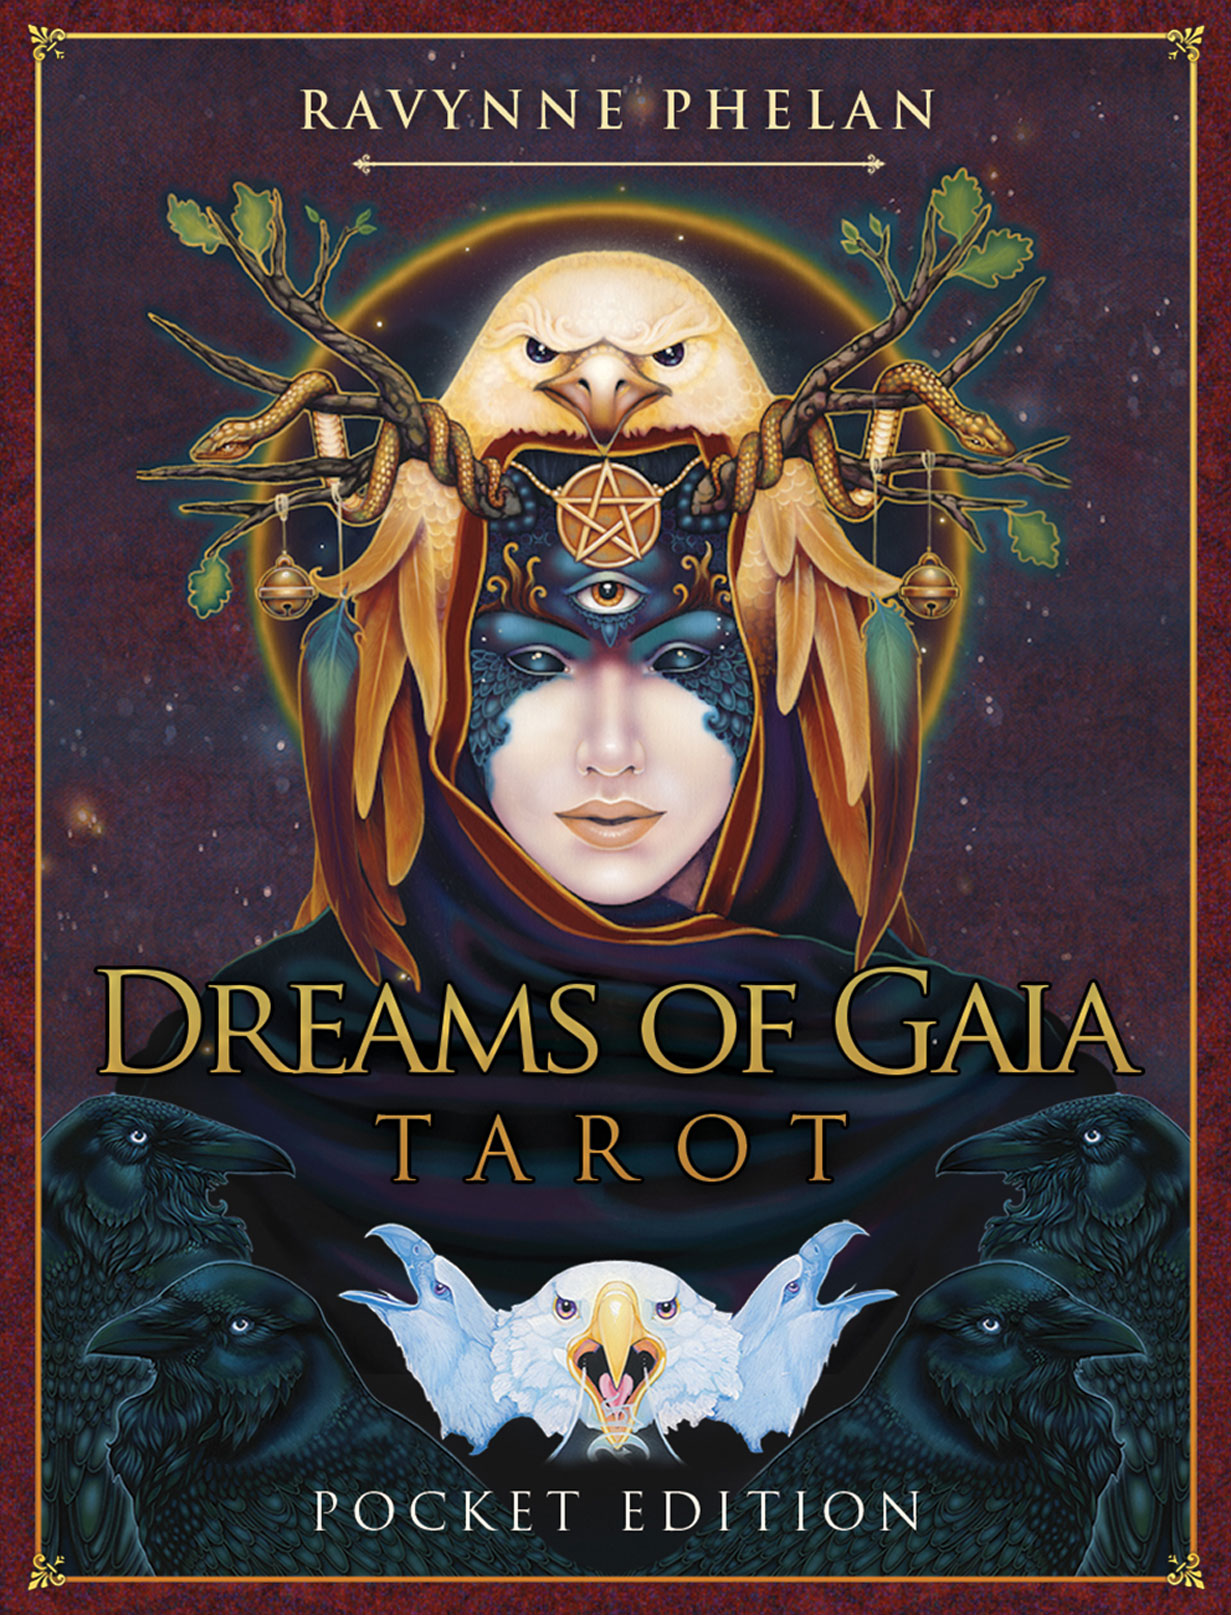 Dreams of Gaia Pocket Edition box